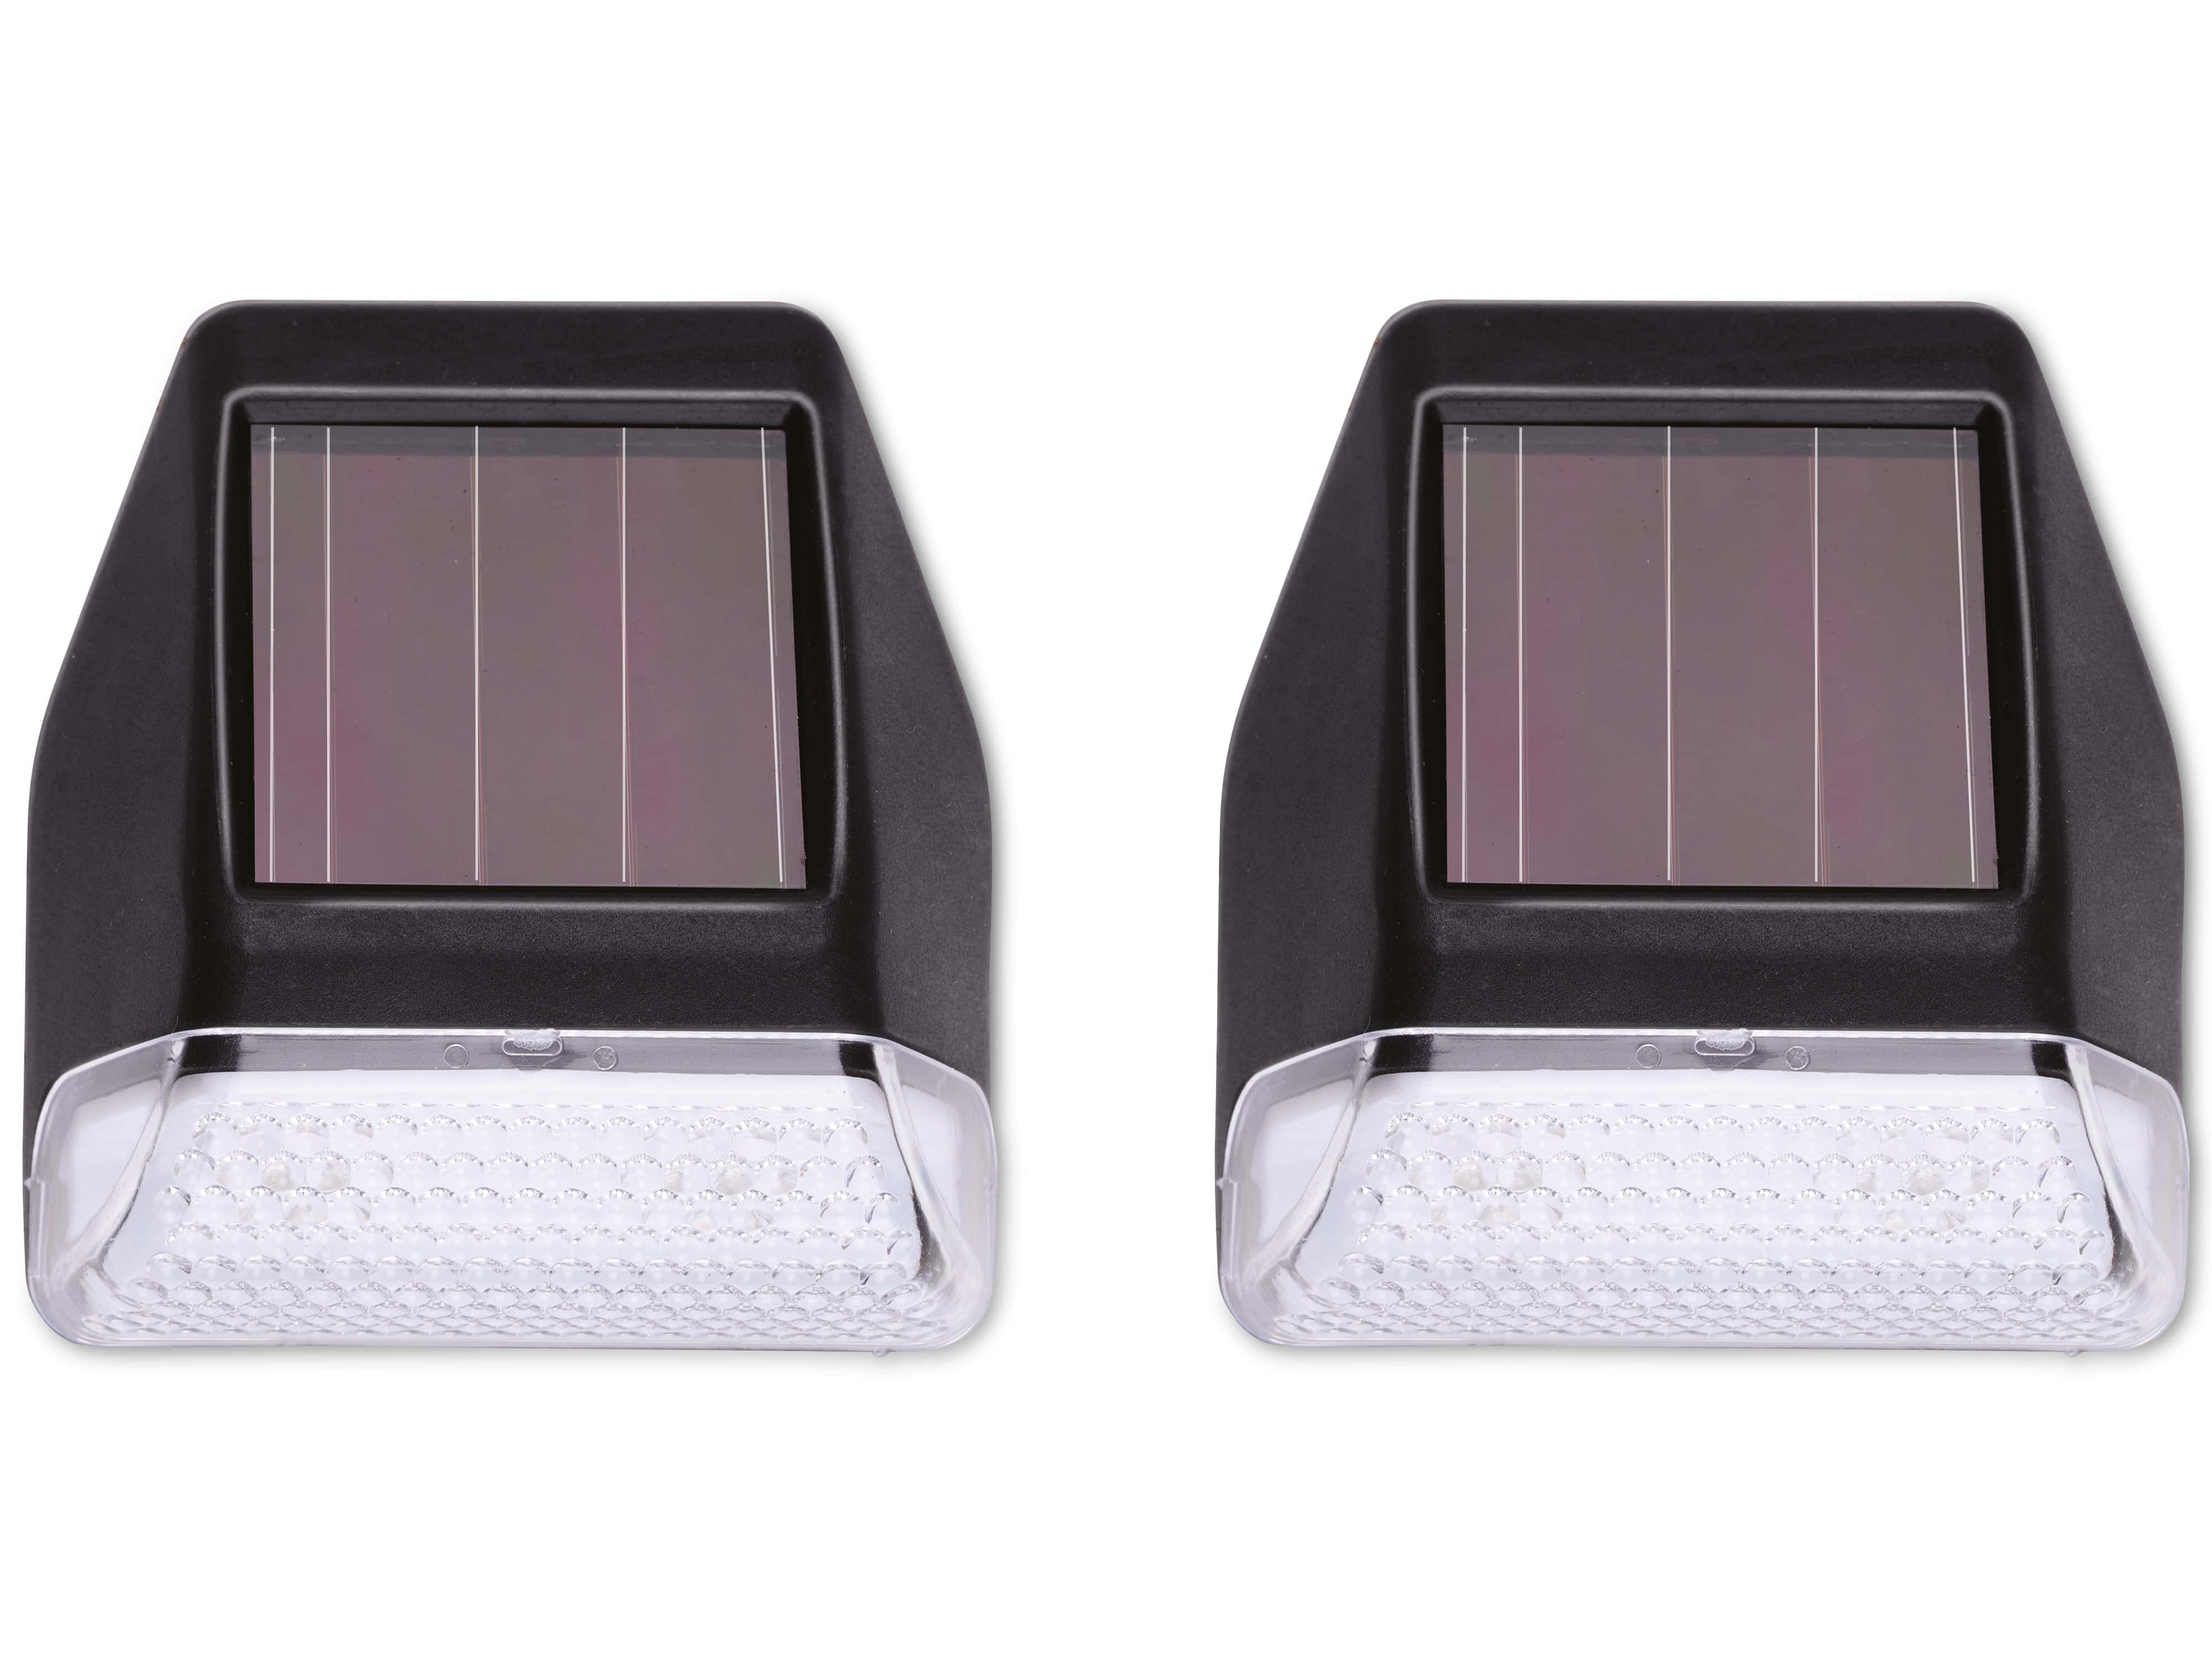 GRUNDIG Solar-LED Wandleuchte 2 LEDs, batteriebetrieben